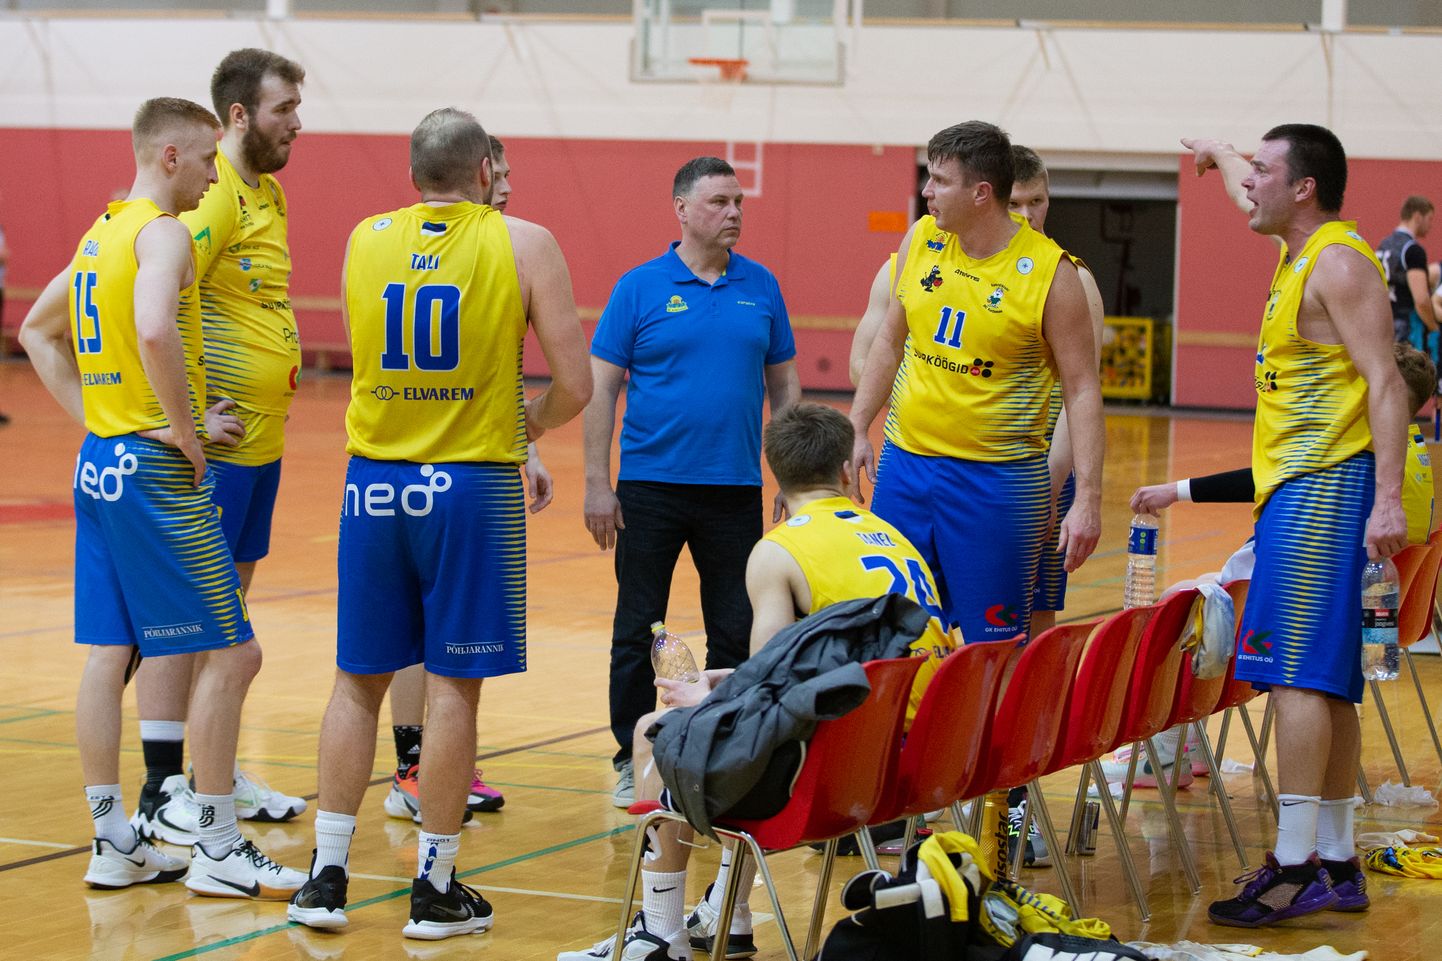 Путь баскетбольной команды "HITO/Karjamaa" в эстонской второй лиге завершился нынче в четвертьфинале, когда команда два раза проиграла "Rock Tartu Terminal".